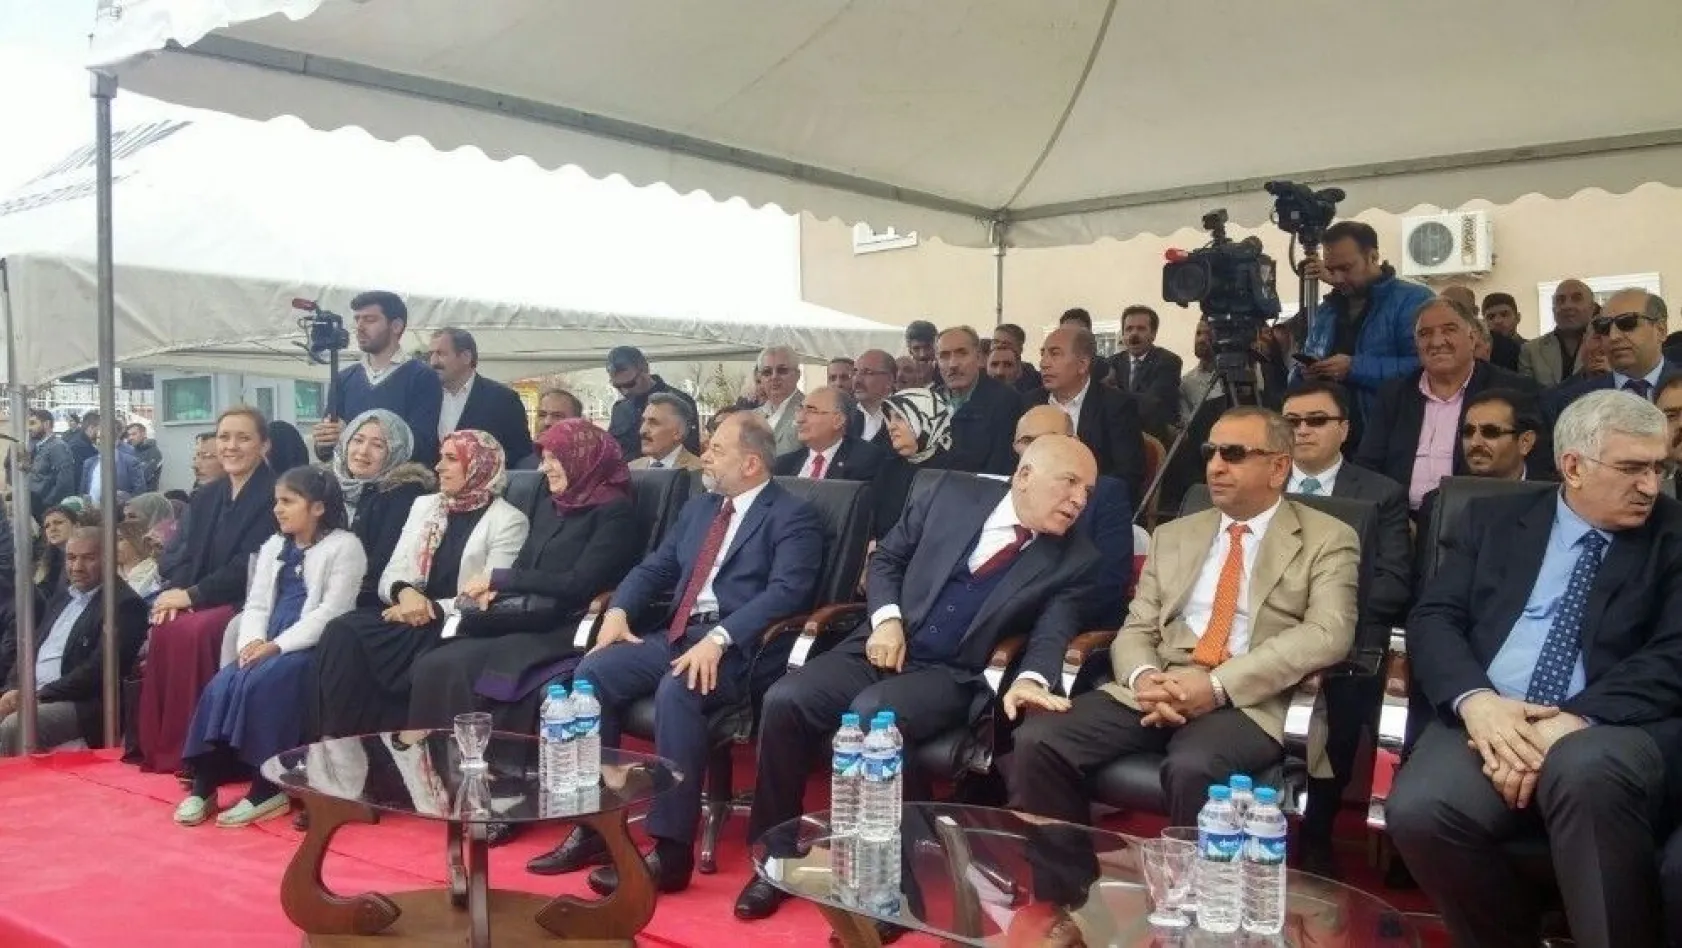 Başbakan Yardımcısı Akdağ, Karayazı'da Kur'an kursu açılışına katıldı
